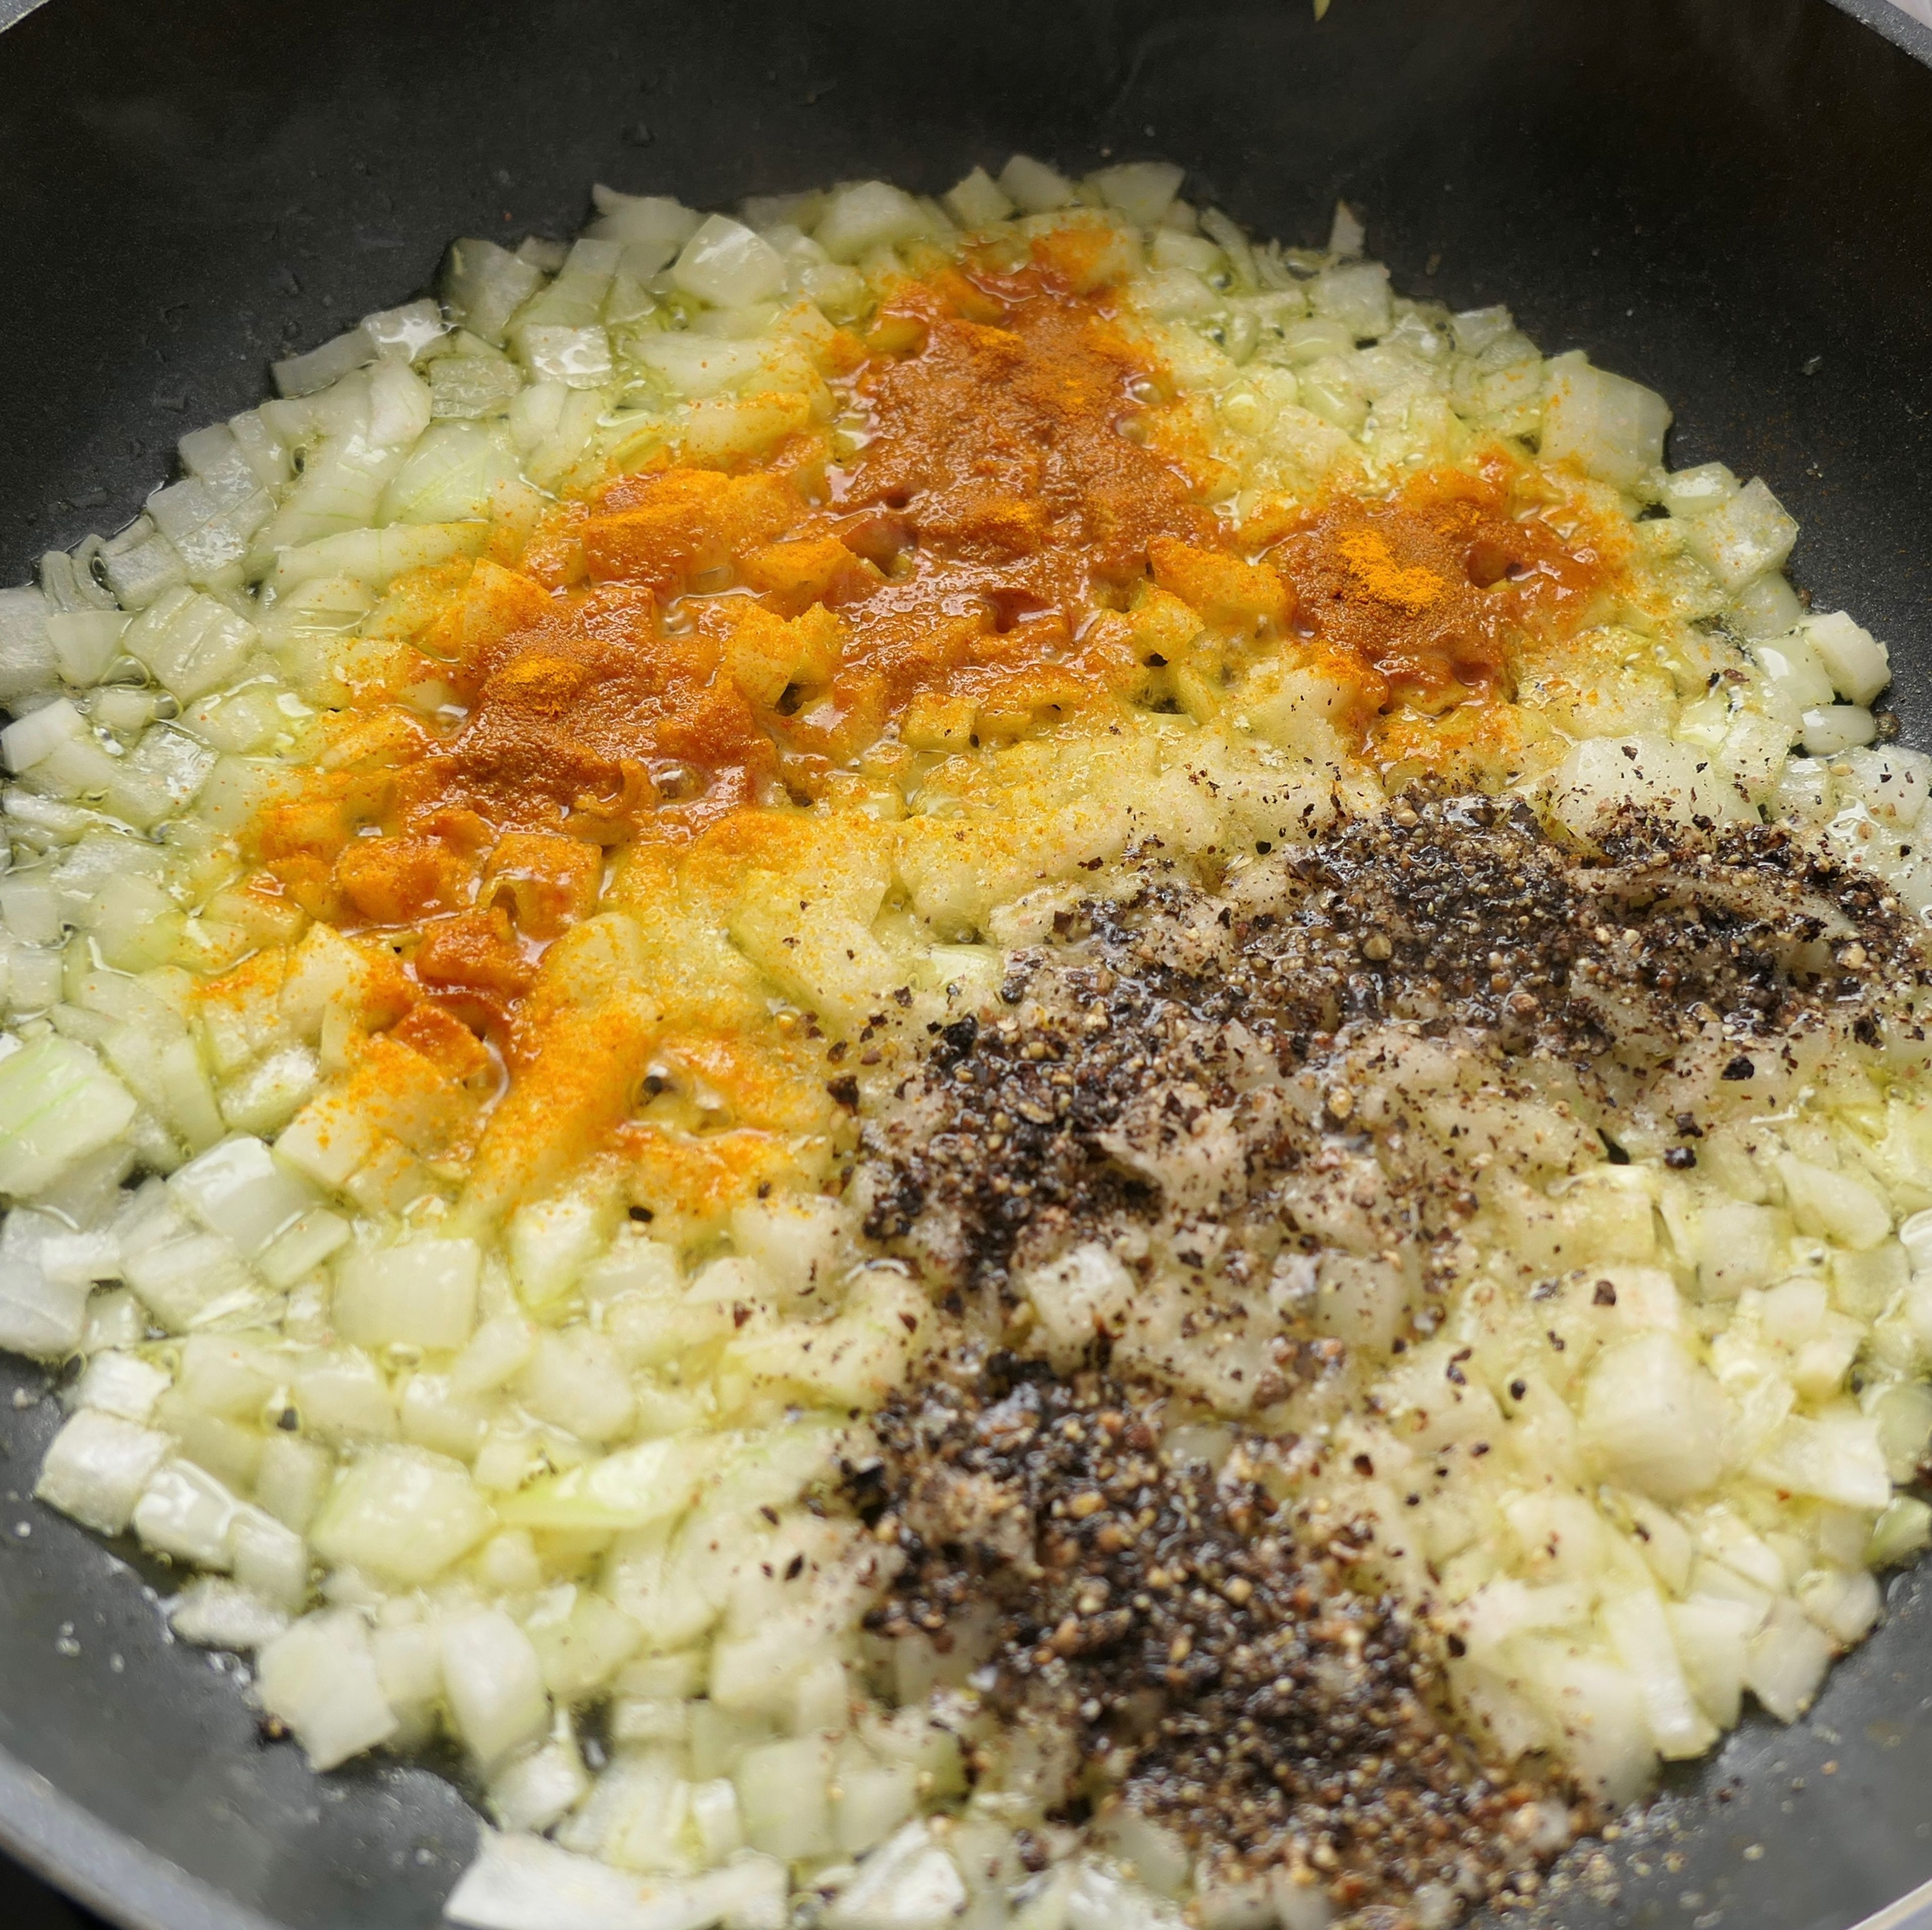 Würfle die Zwiebeln und brate sie in einer separaten Pfanne zusammen mit Salz, Kurkuma und Pfeffer an bis sie goldbraun sind.